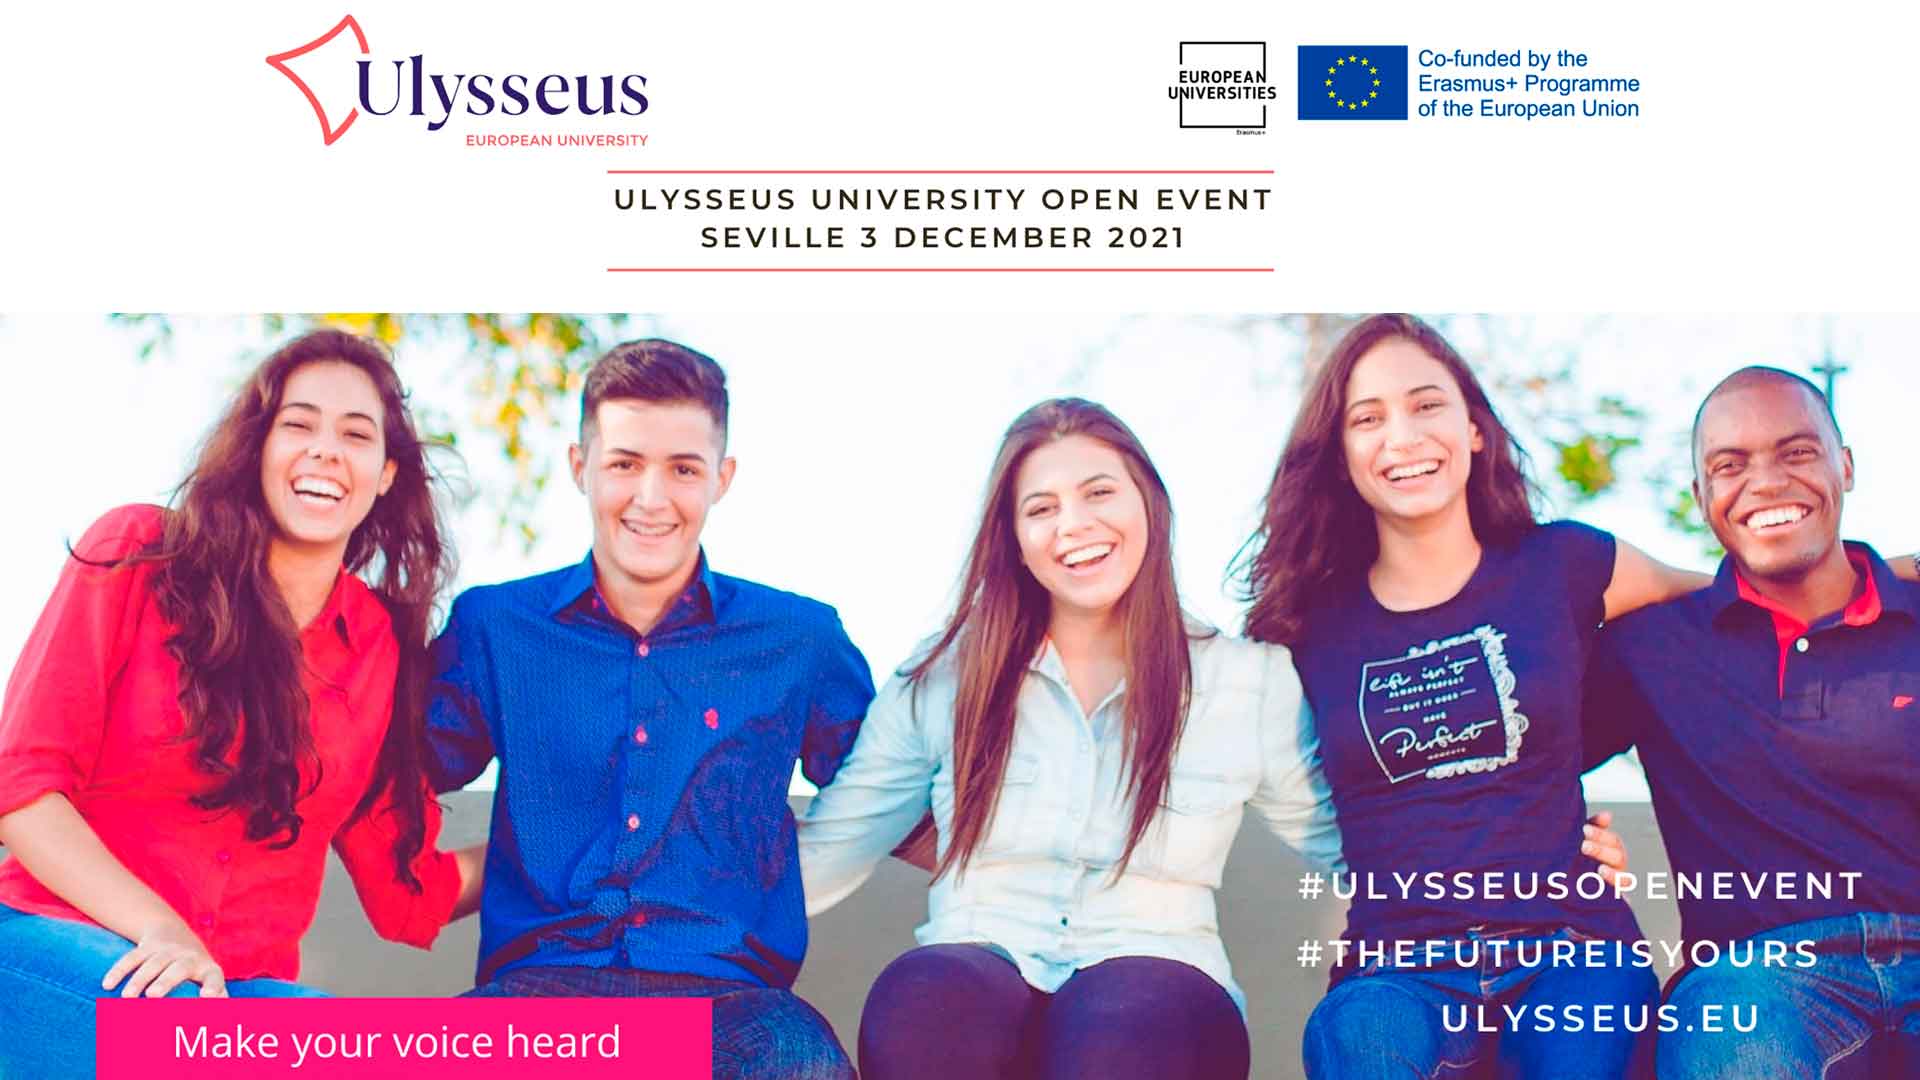 Ulysseus Eurooppalainen yliopisto järjestää opiskelijoille avoimen tapahtuman Opiskelijoiden on mahdollisuus tuoda tapahtumassa esiin koulutukseen liittyviä teemoja ennen ensi keväänä järjestettävää Euroopan tulevaisuuskonferenssin juhlatilaisuutta.